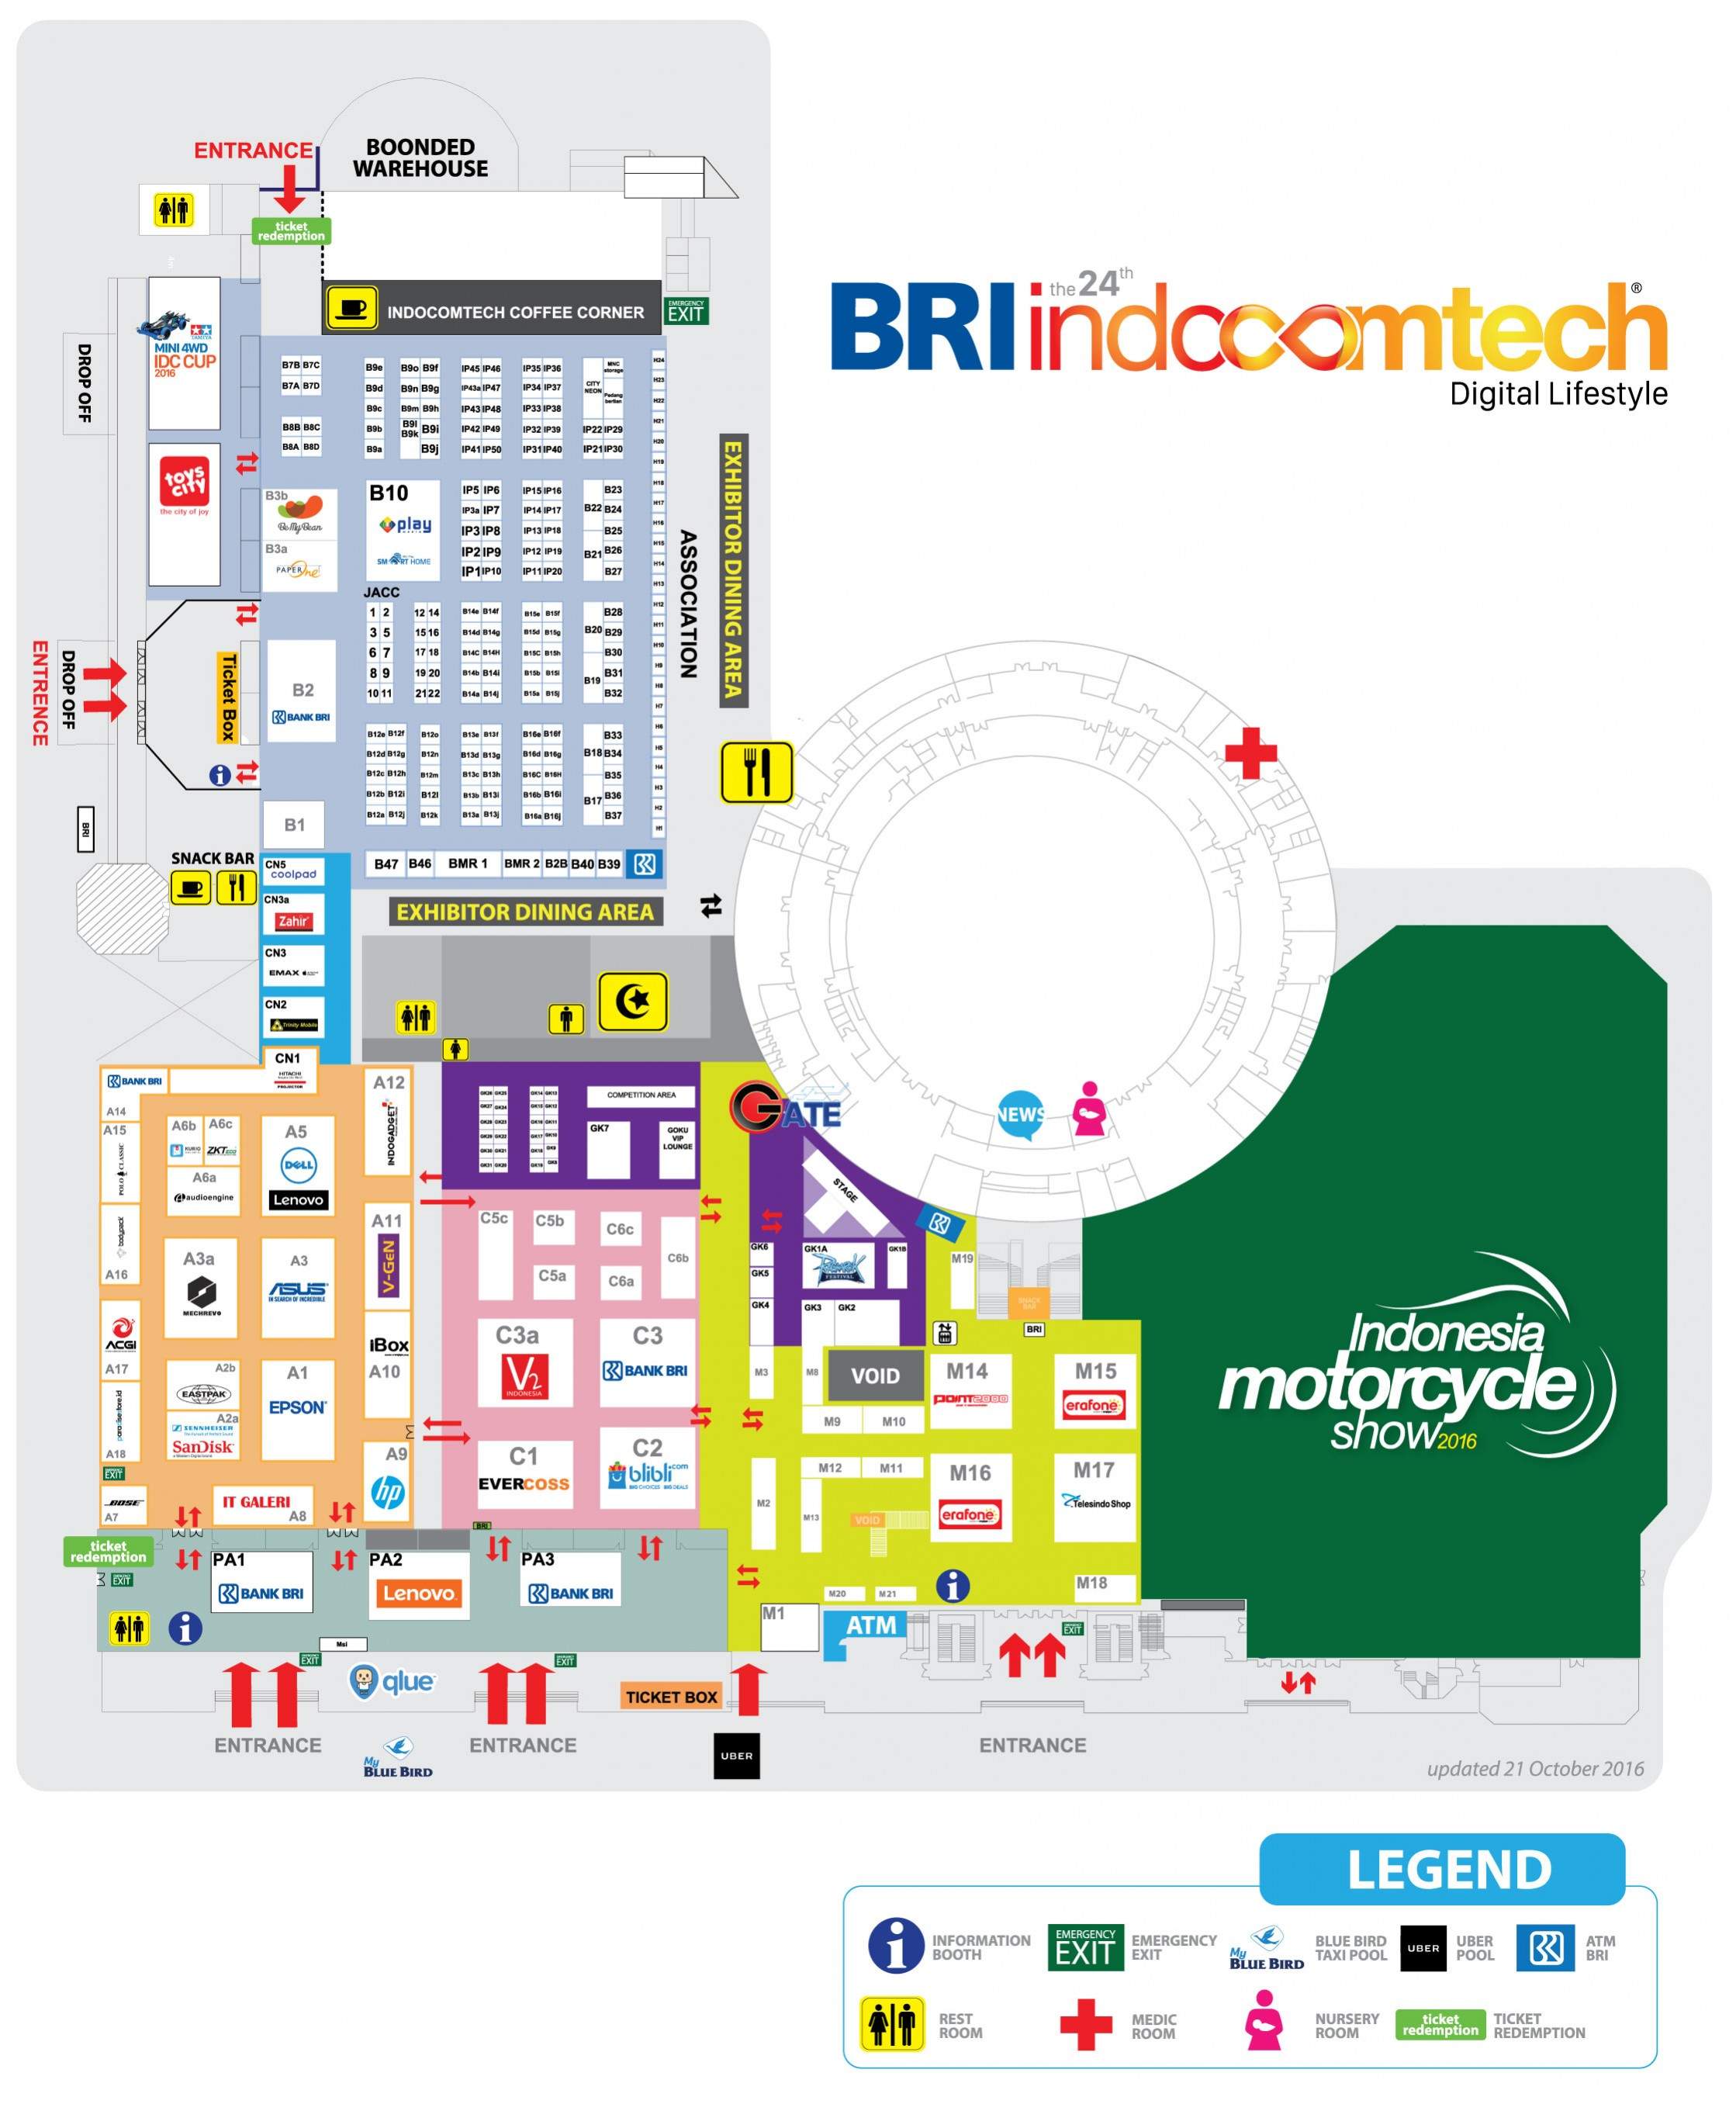 Indocomtech 2016